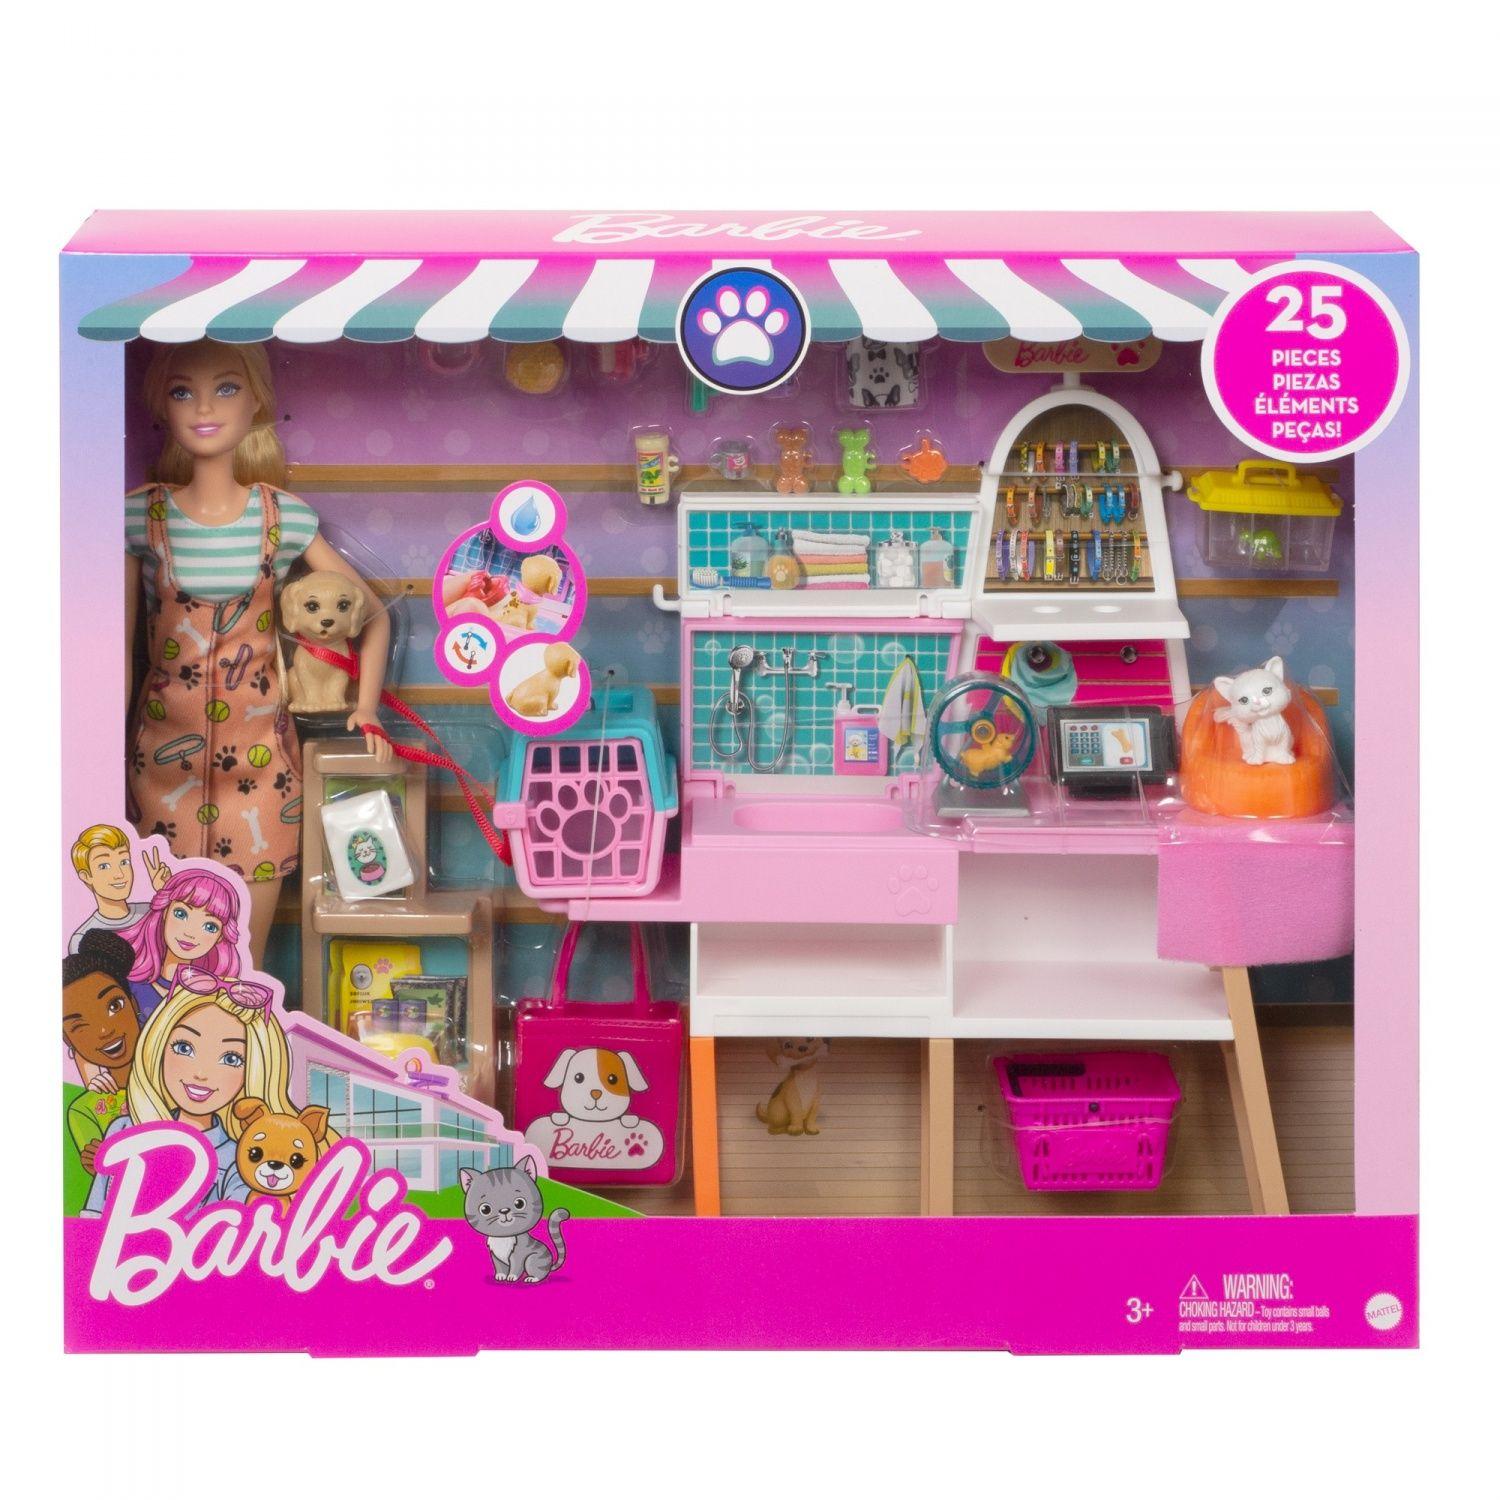 Barbie - coffret toilettage chevaux avec poupée barbie 2 chevaux et + de 20  accessoires - accessoire poupée mannequin - des 3 ans - La Poste